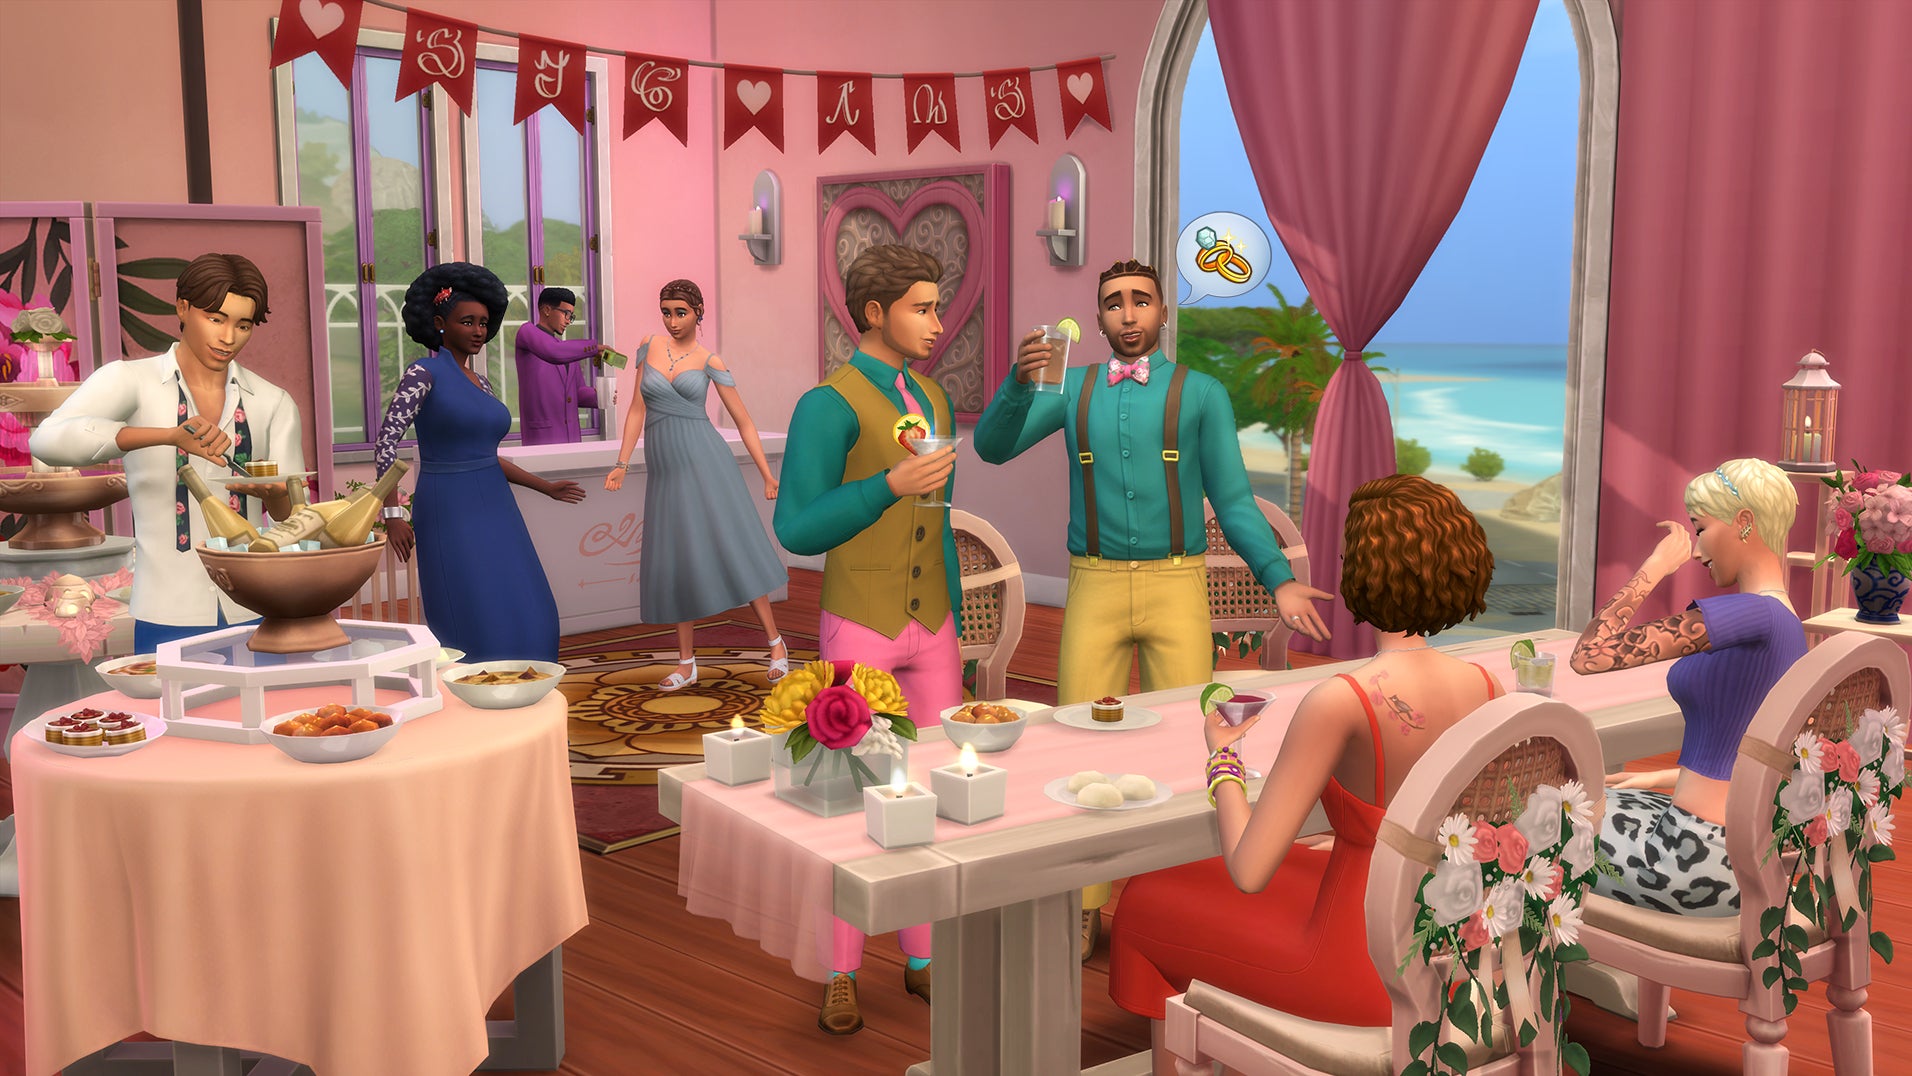 Afbeeldingen van De Sims 4 Mijn Bruiloft release bekend